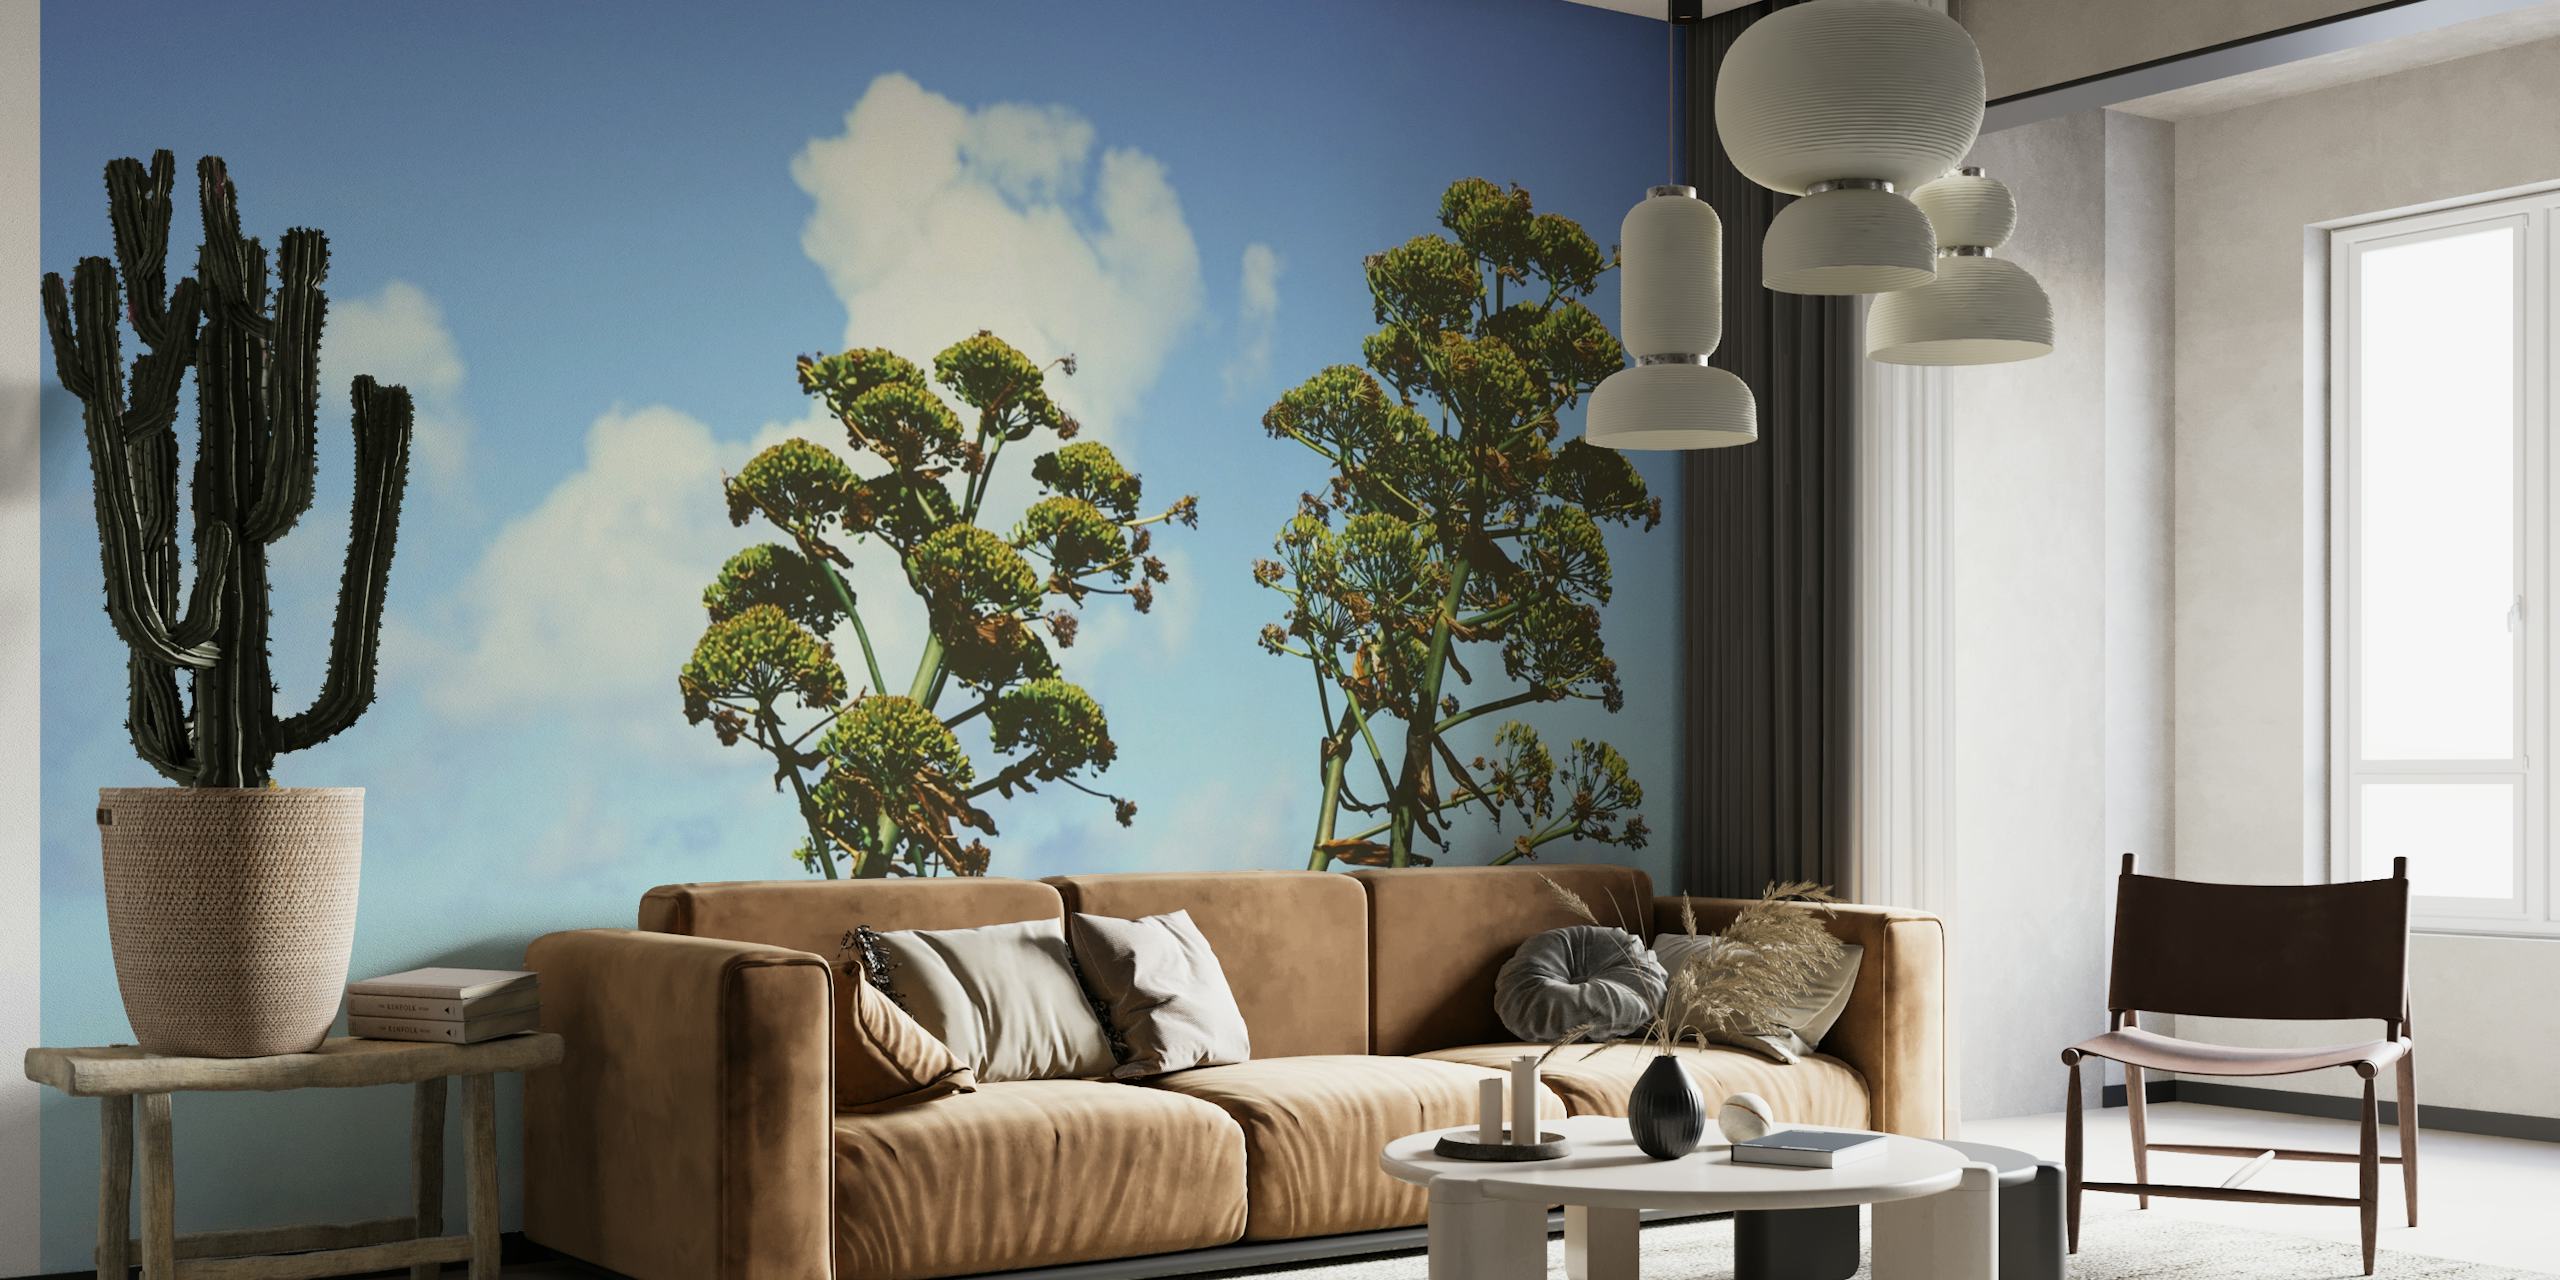 Zen Botanische muurschildering met hoge bomen en weelderig gebladerte tegen een blauwe lucht